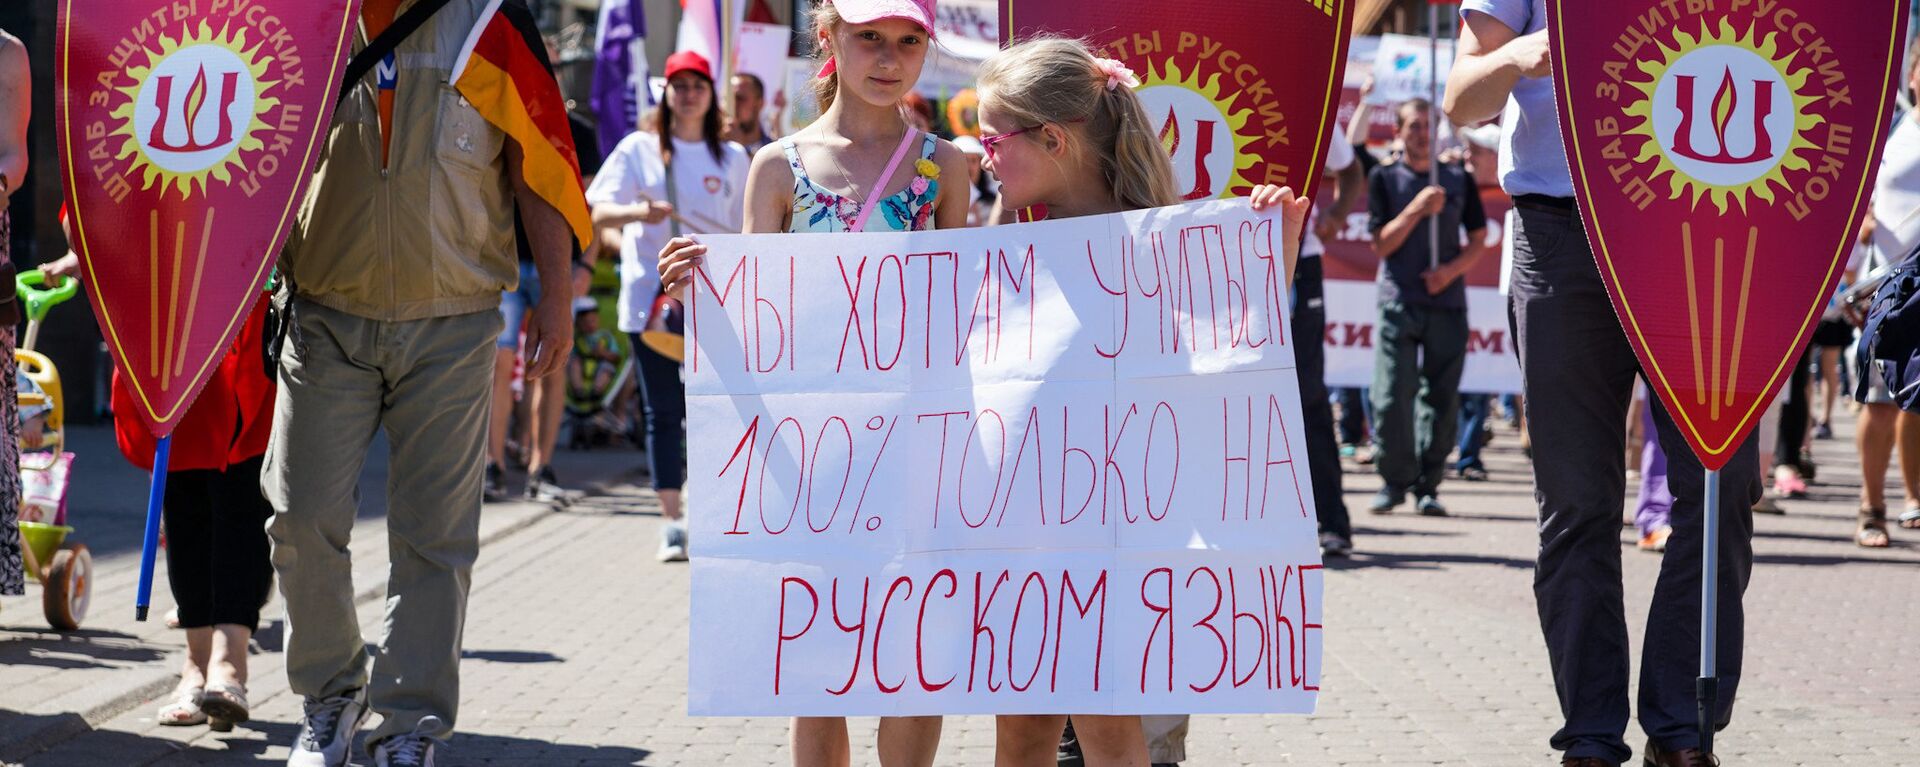 Акция в защиту русских школ в Риге. 2 июня 2018 г. - Sputnik Латвия, 1920, 04.03.2021